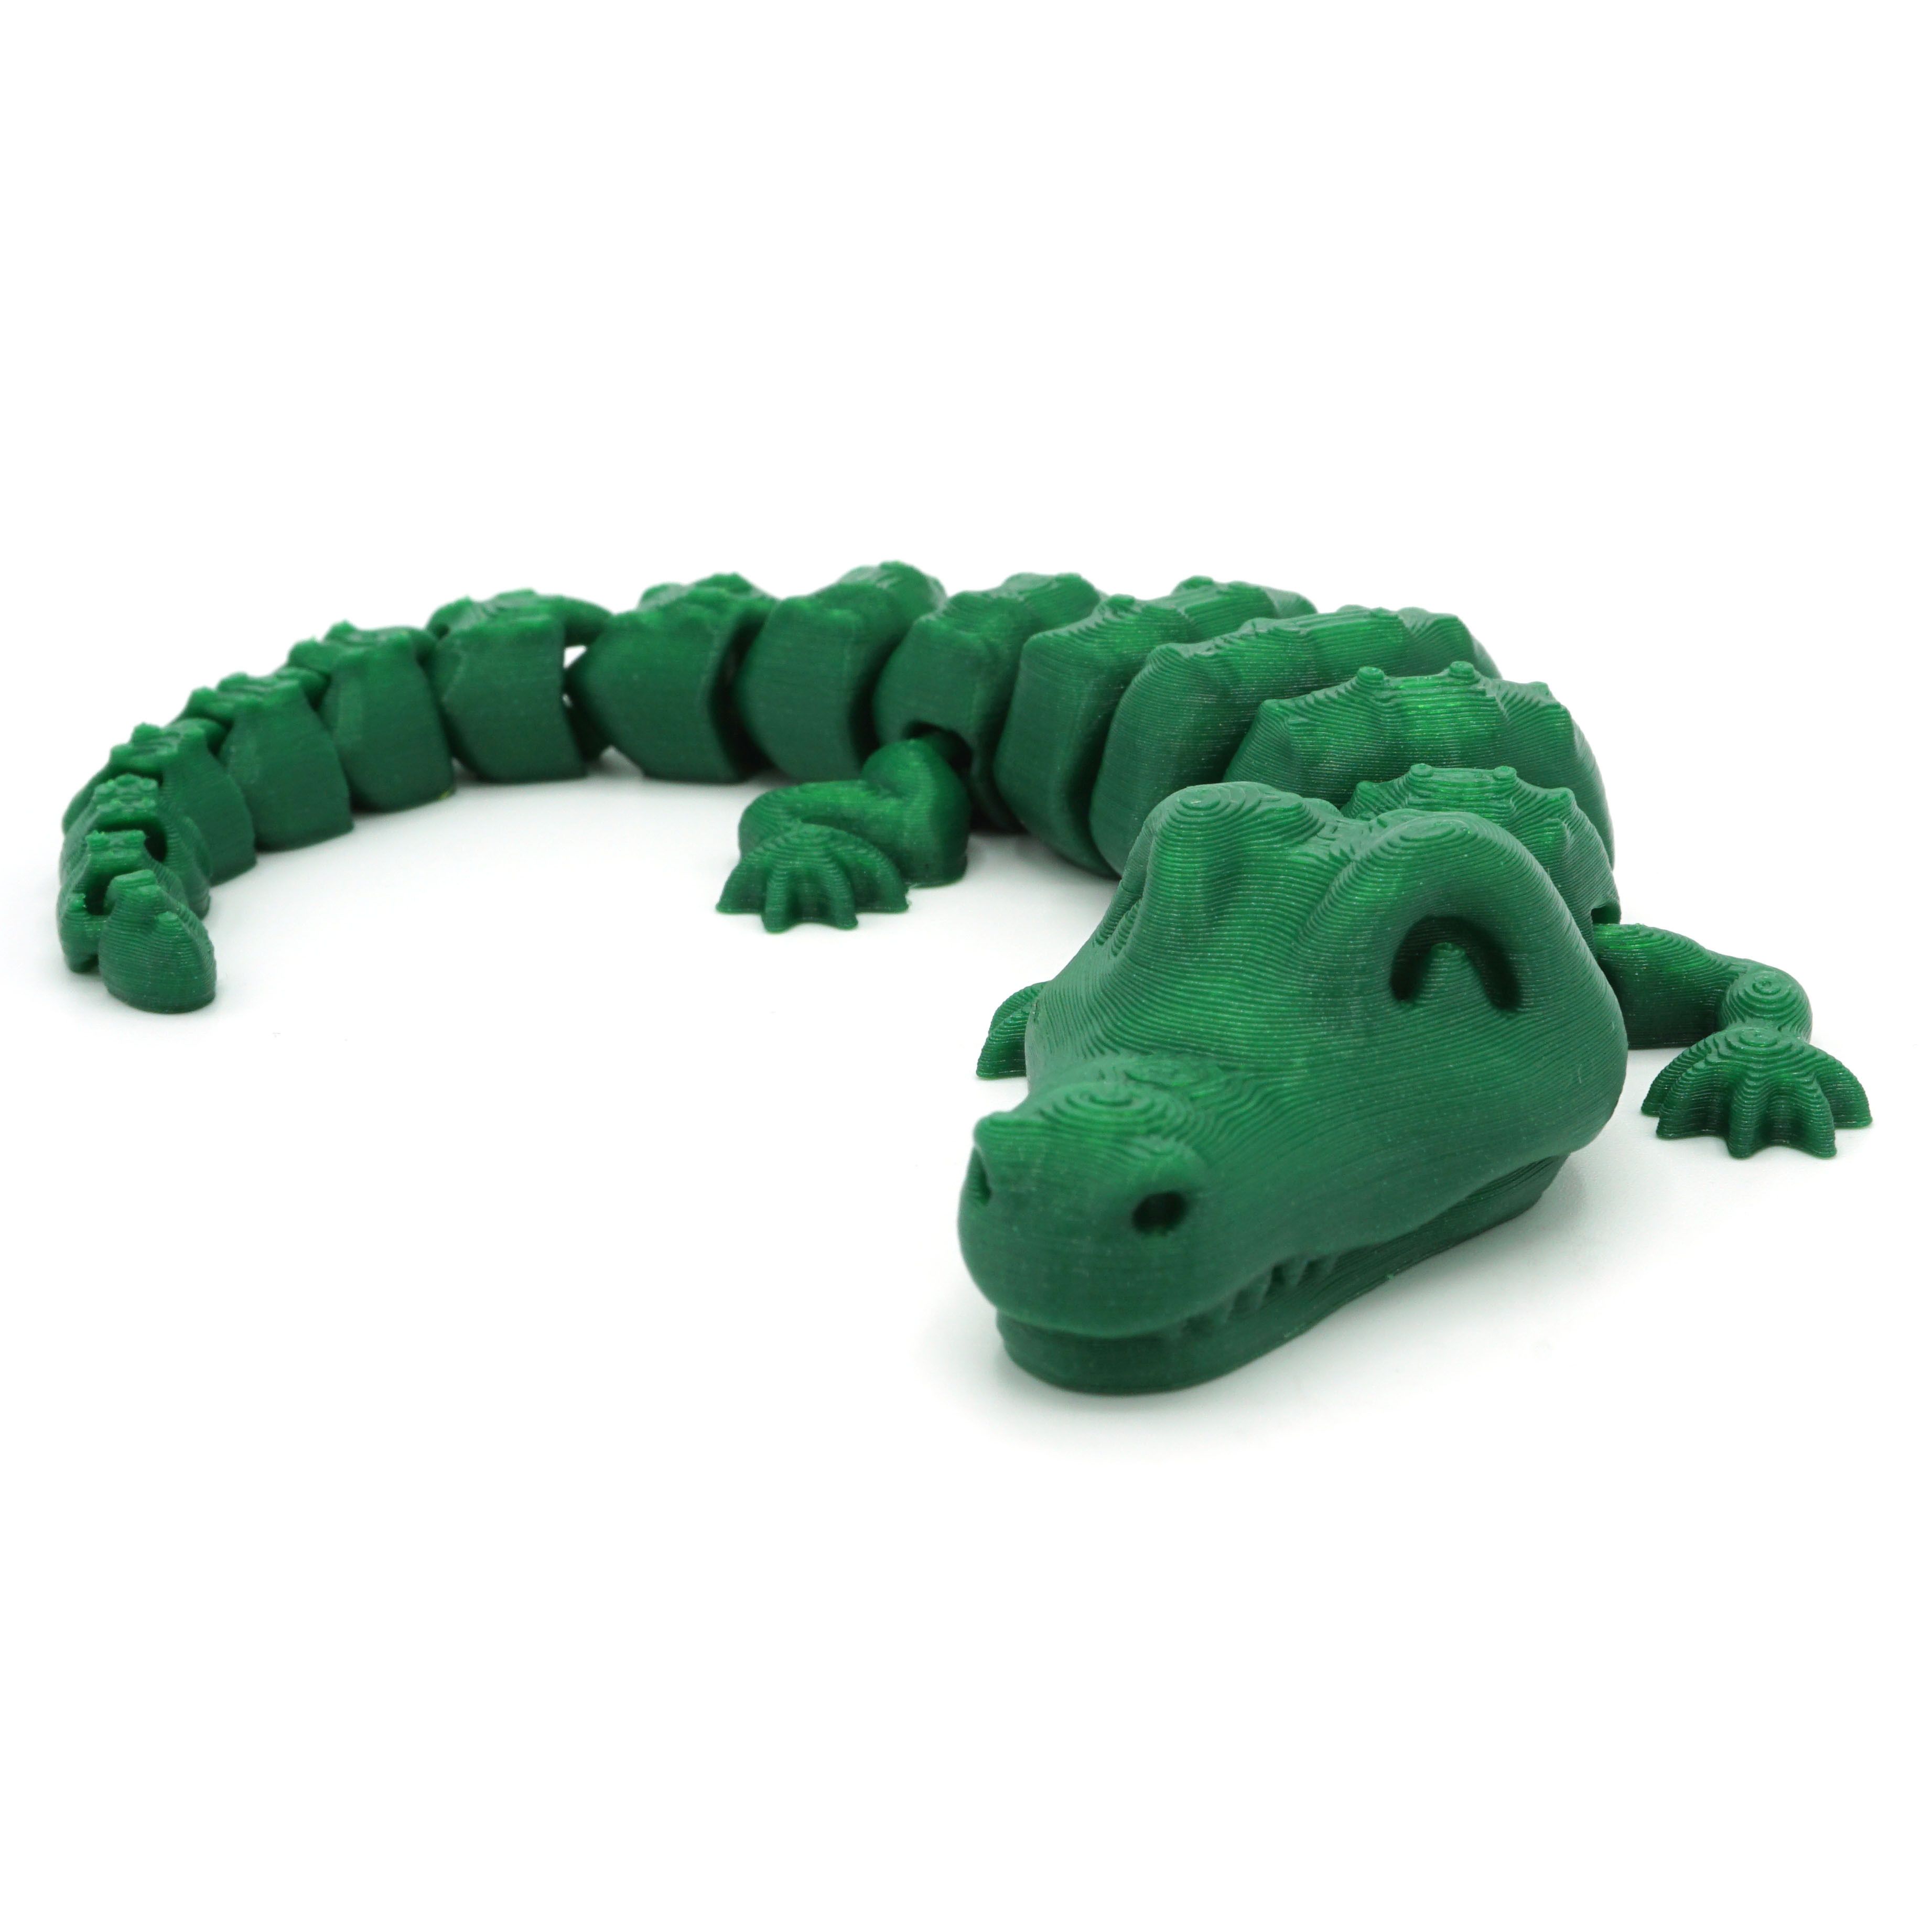 DSC01290 copia.jpg Download STL file Articulated Alligator • 3D printer design, mcgybeer